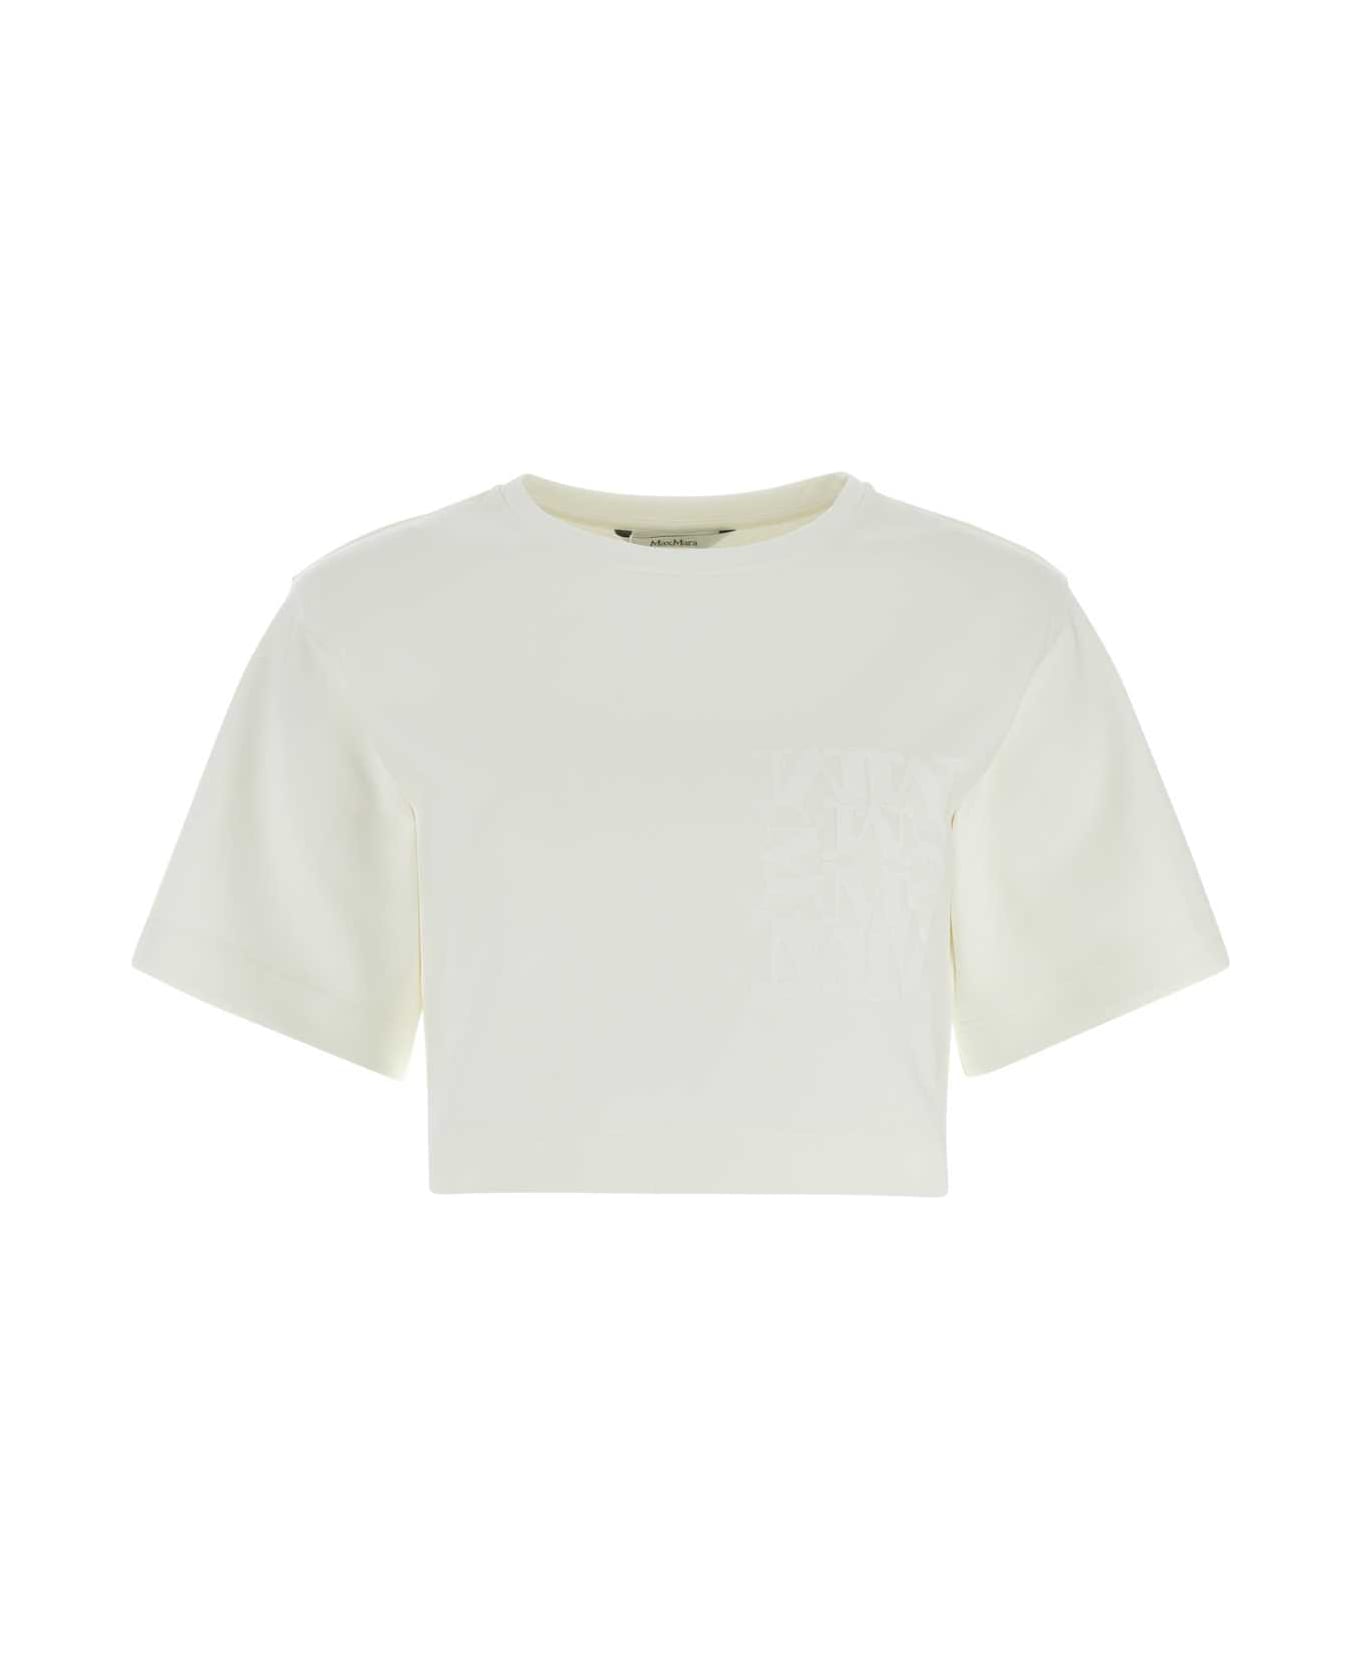 Max Mara White Cotton Messico T-shirt - BIANCO Tシャツ